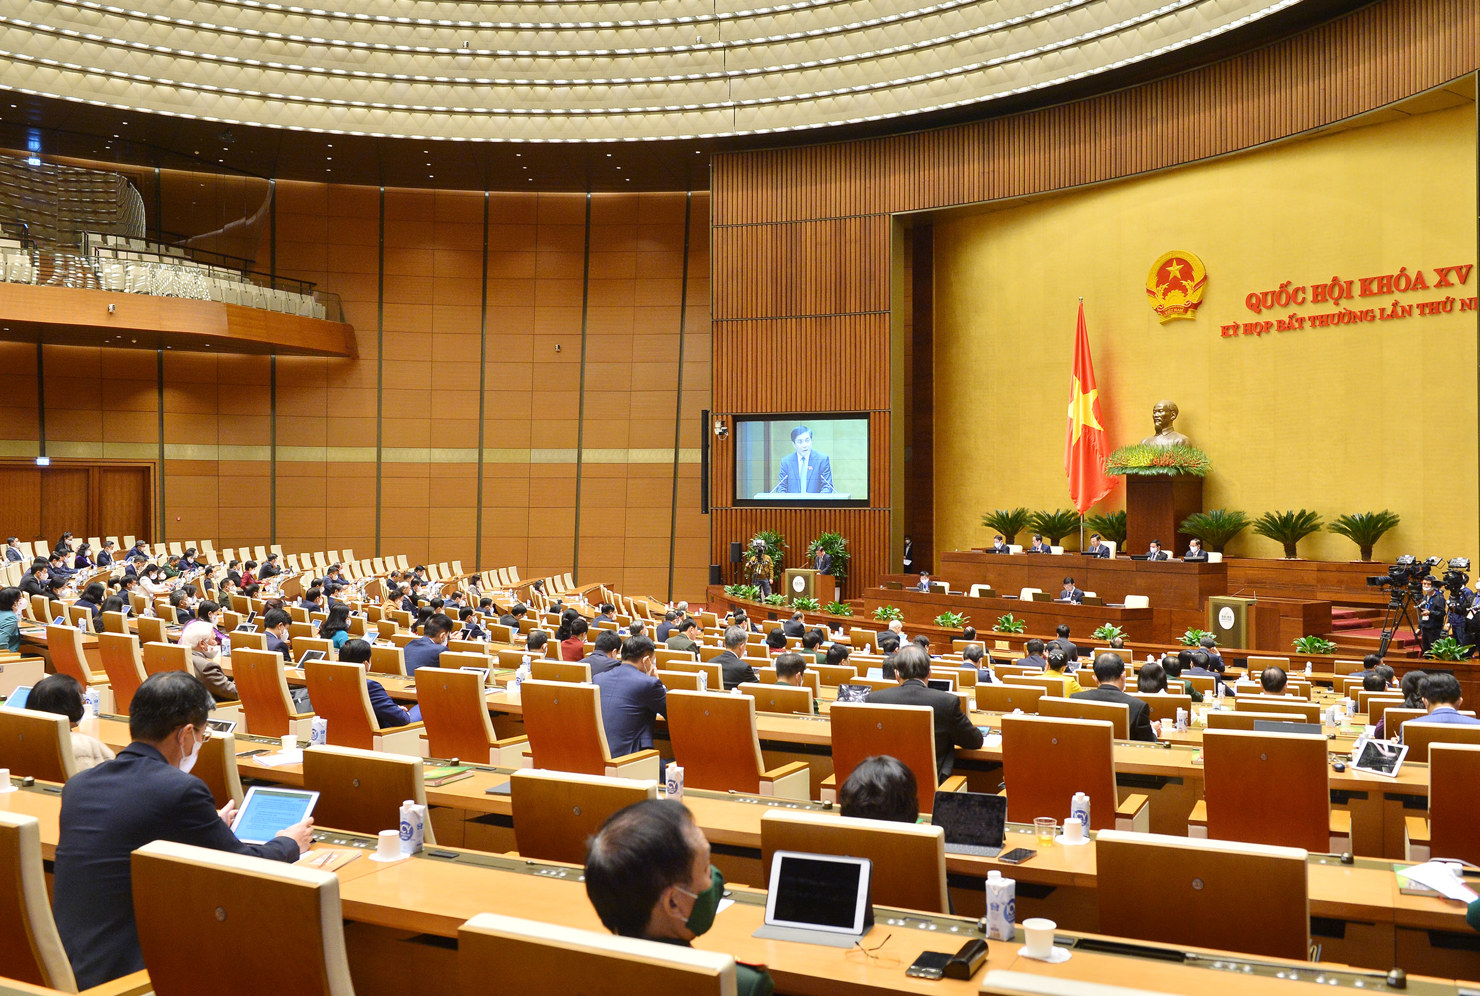 Quốc hội chính thức thông qua Nghị quyết về chính sách tài khóa, tiền tệ để hỗ trợ Chương trình phục hồi và phát triển kinh tế - xã hội.